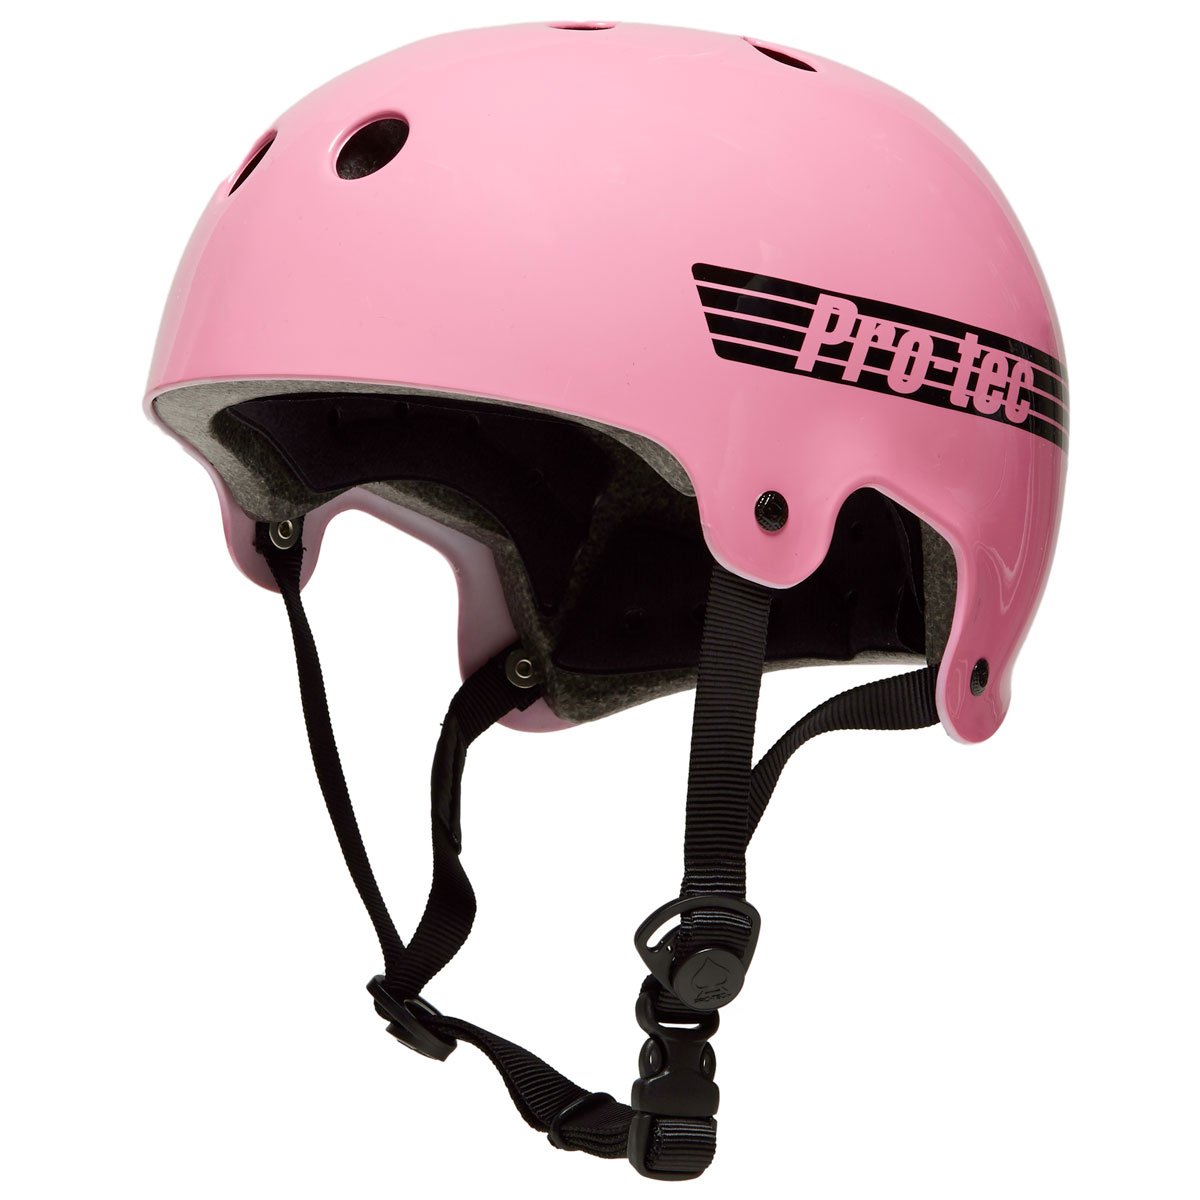 Pro-Tec Old School Certified Helmet - Gloss Pink